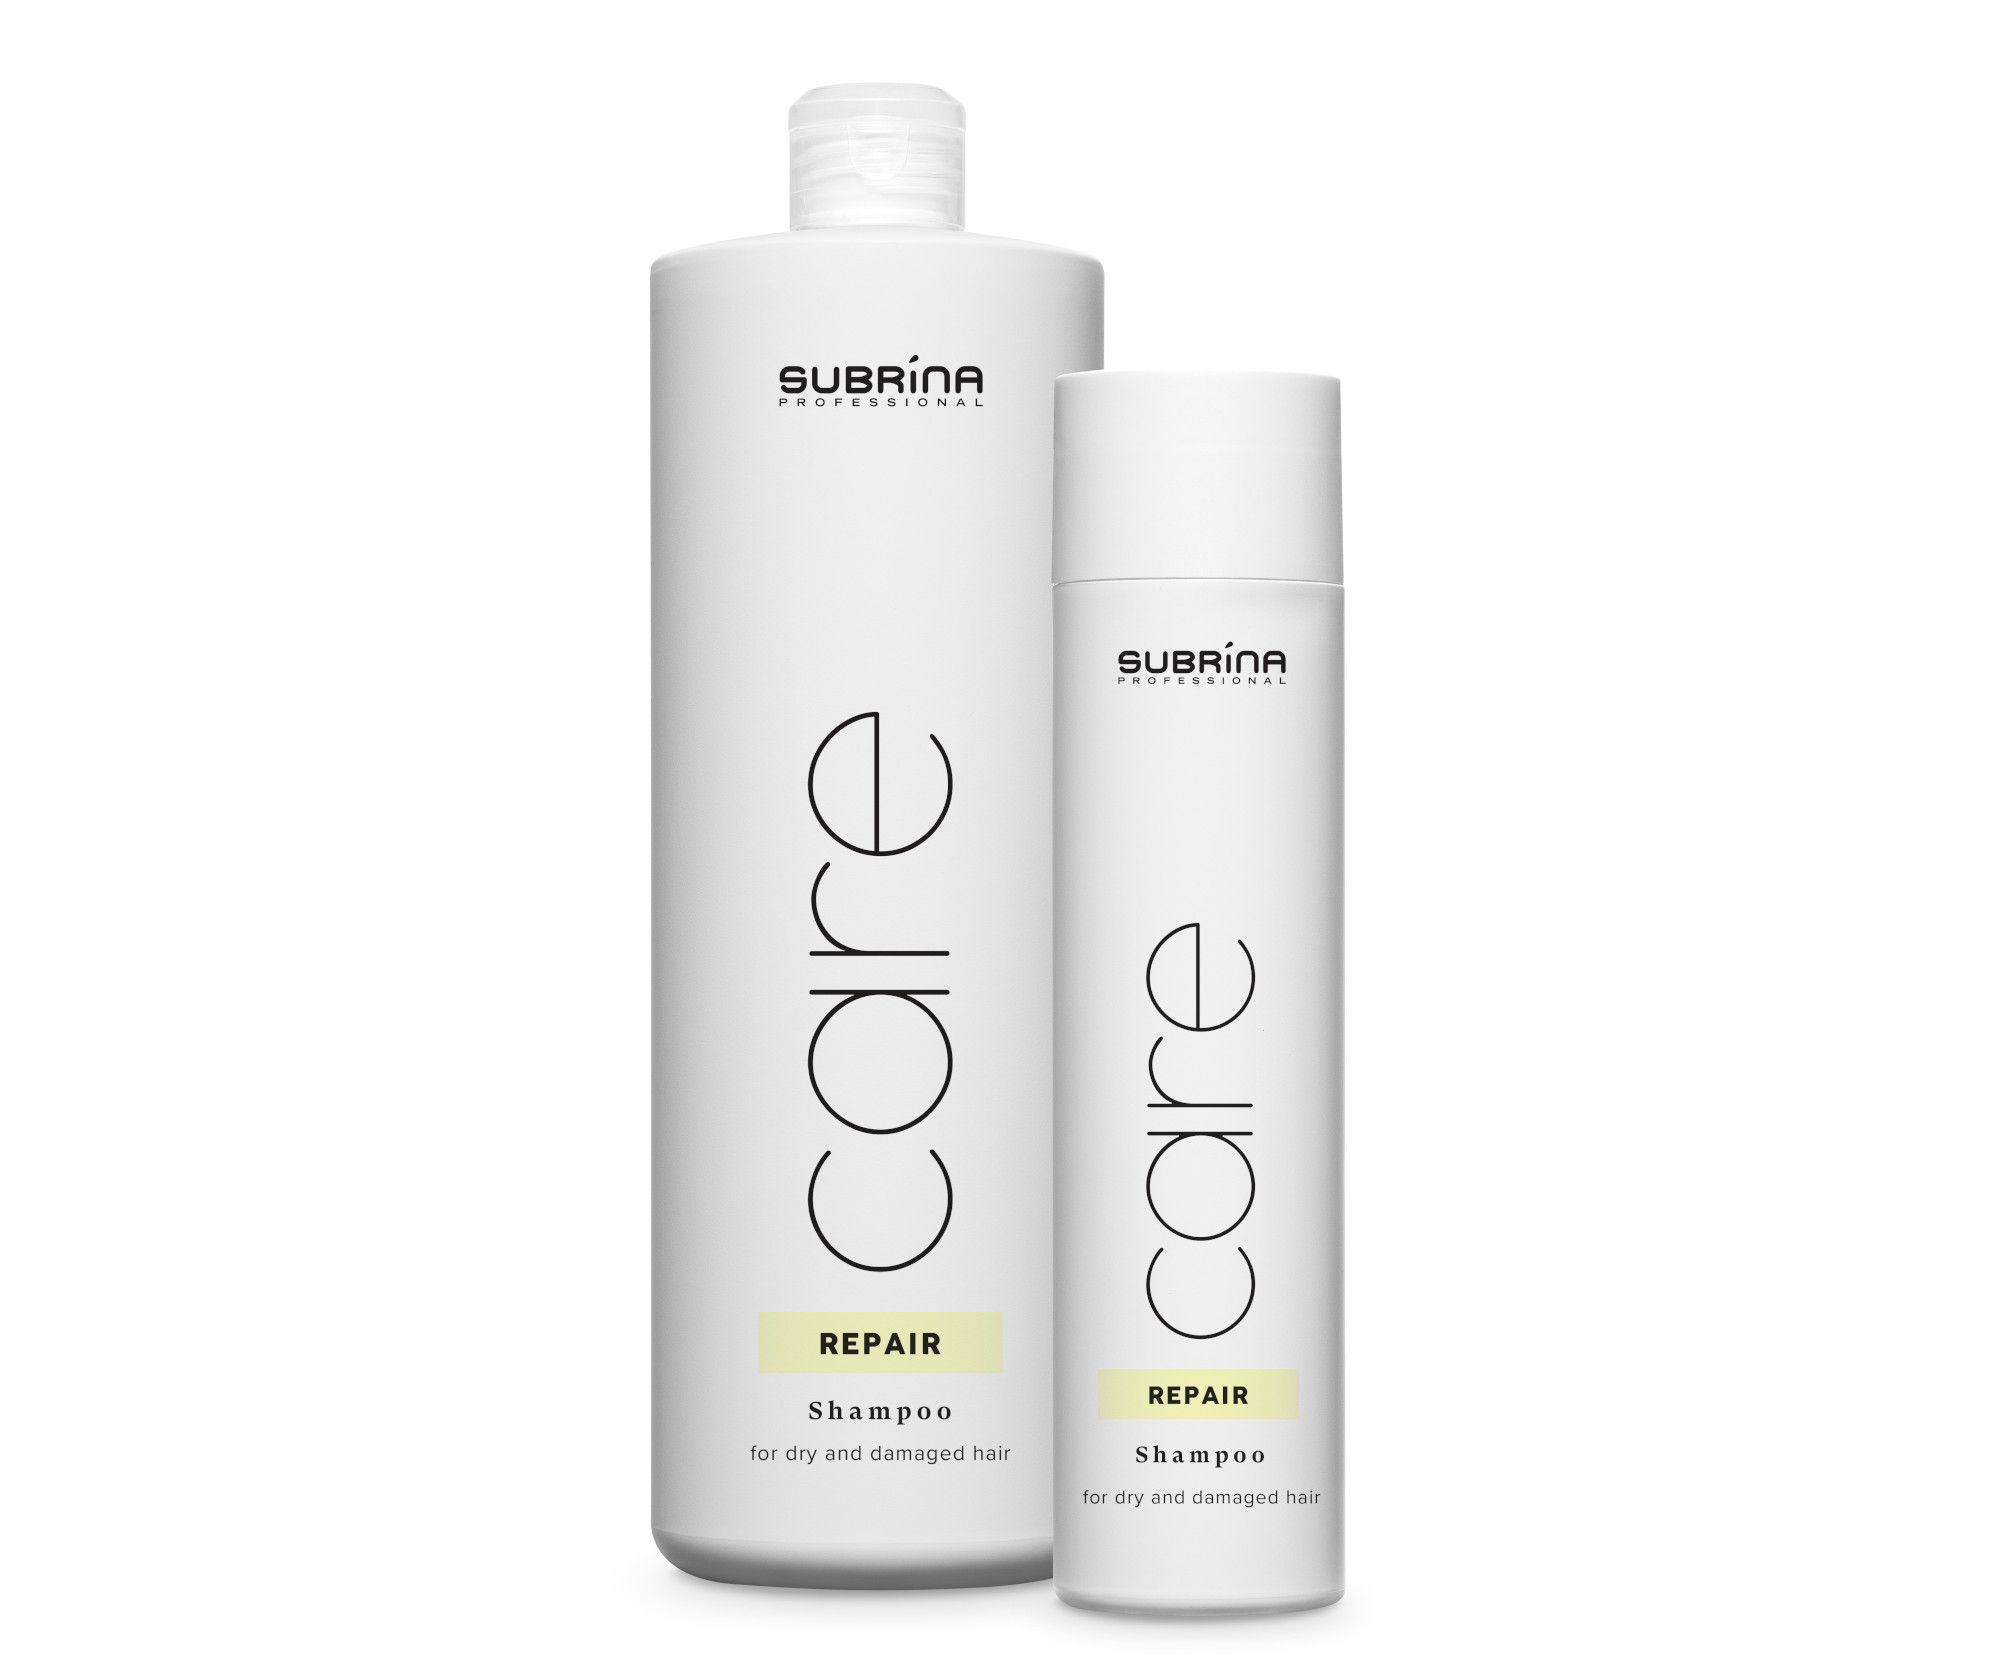 Šampon pro suché a poškozené vlasy Subrina Professional Care Repair - 1000 ml + šampon 250 ml zdarma + dárek zdarma